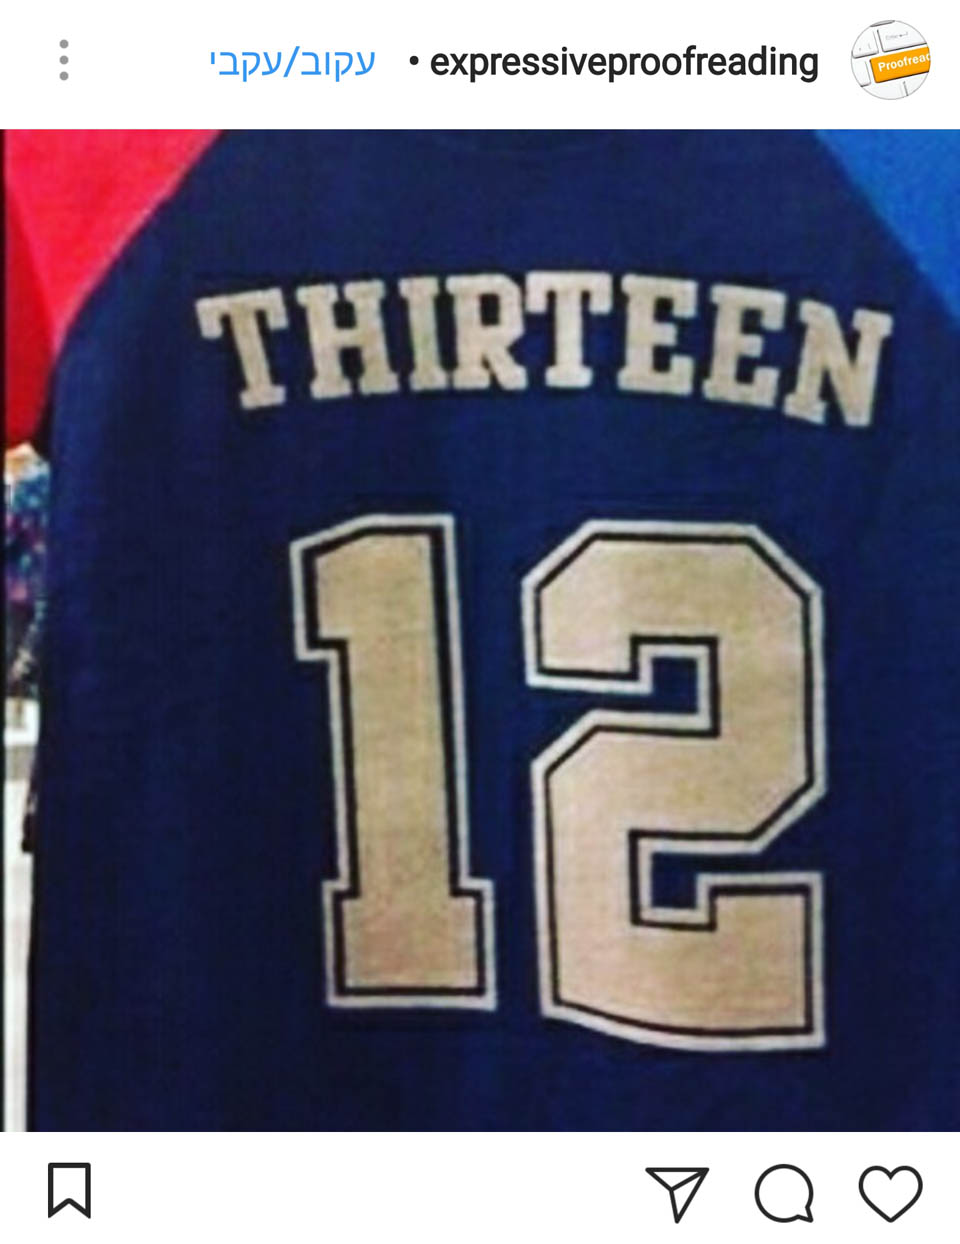  Номер 12, ой нет, 13. Фото: Instagram